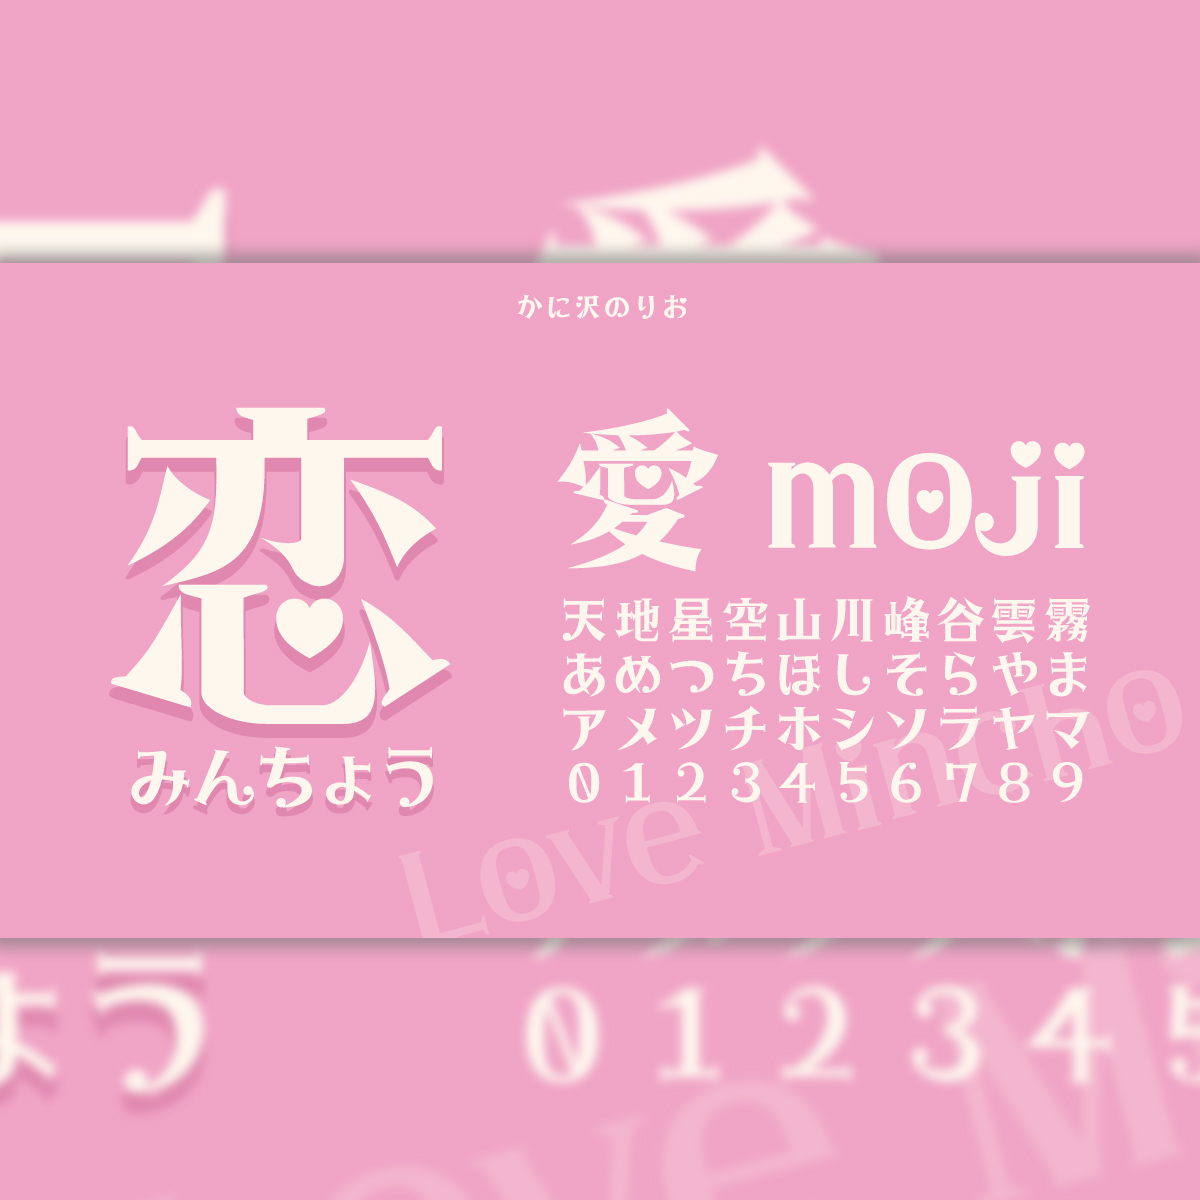 designpocket_jp tweet picture